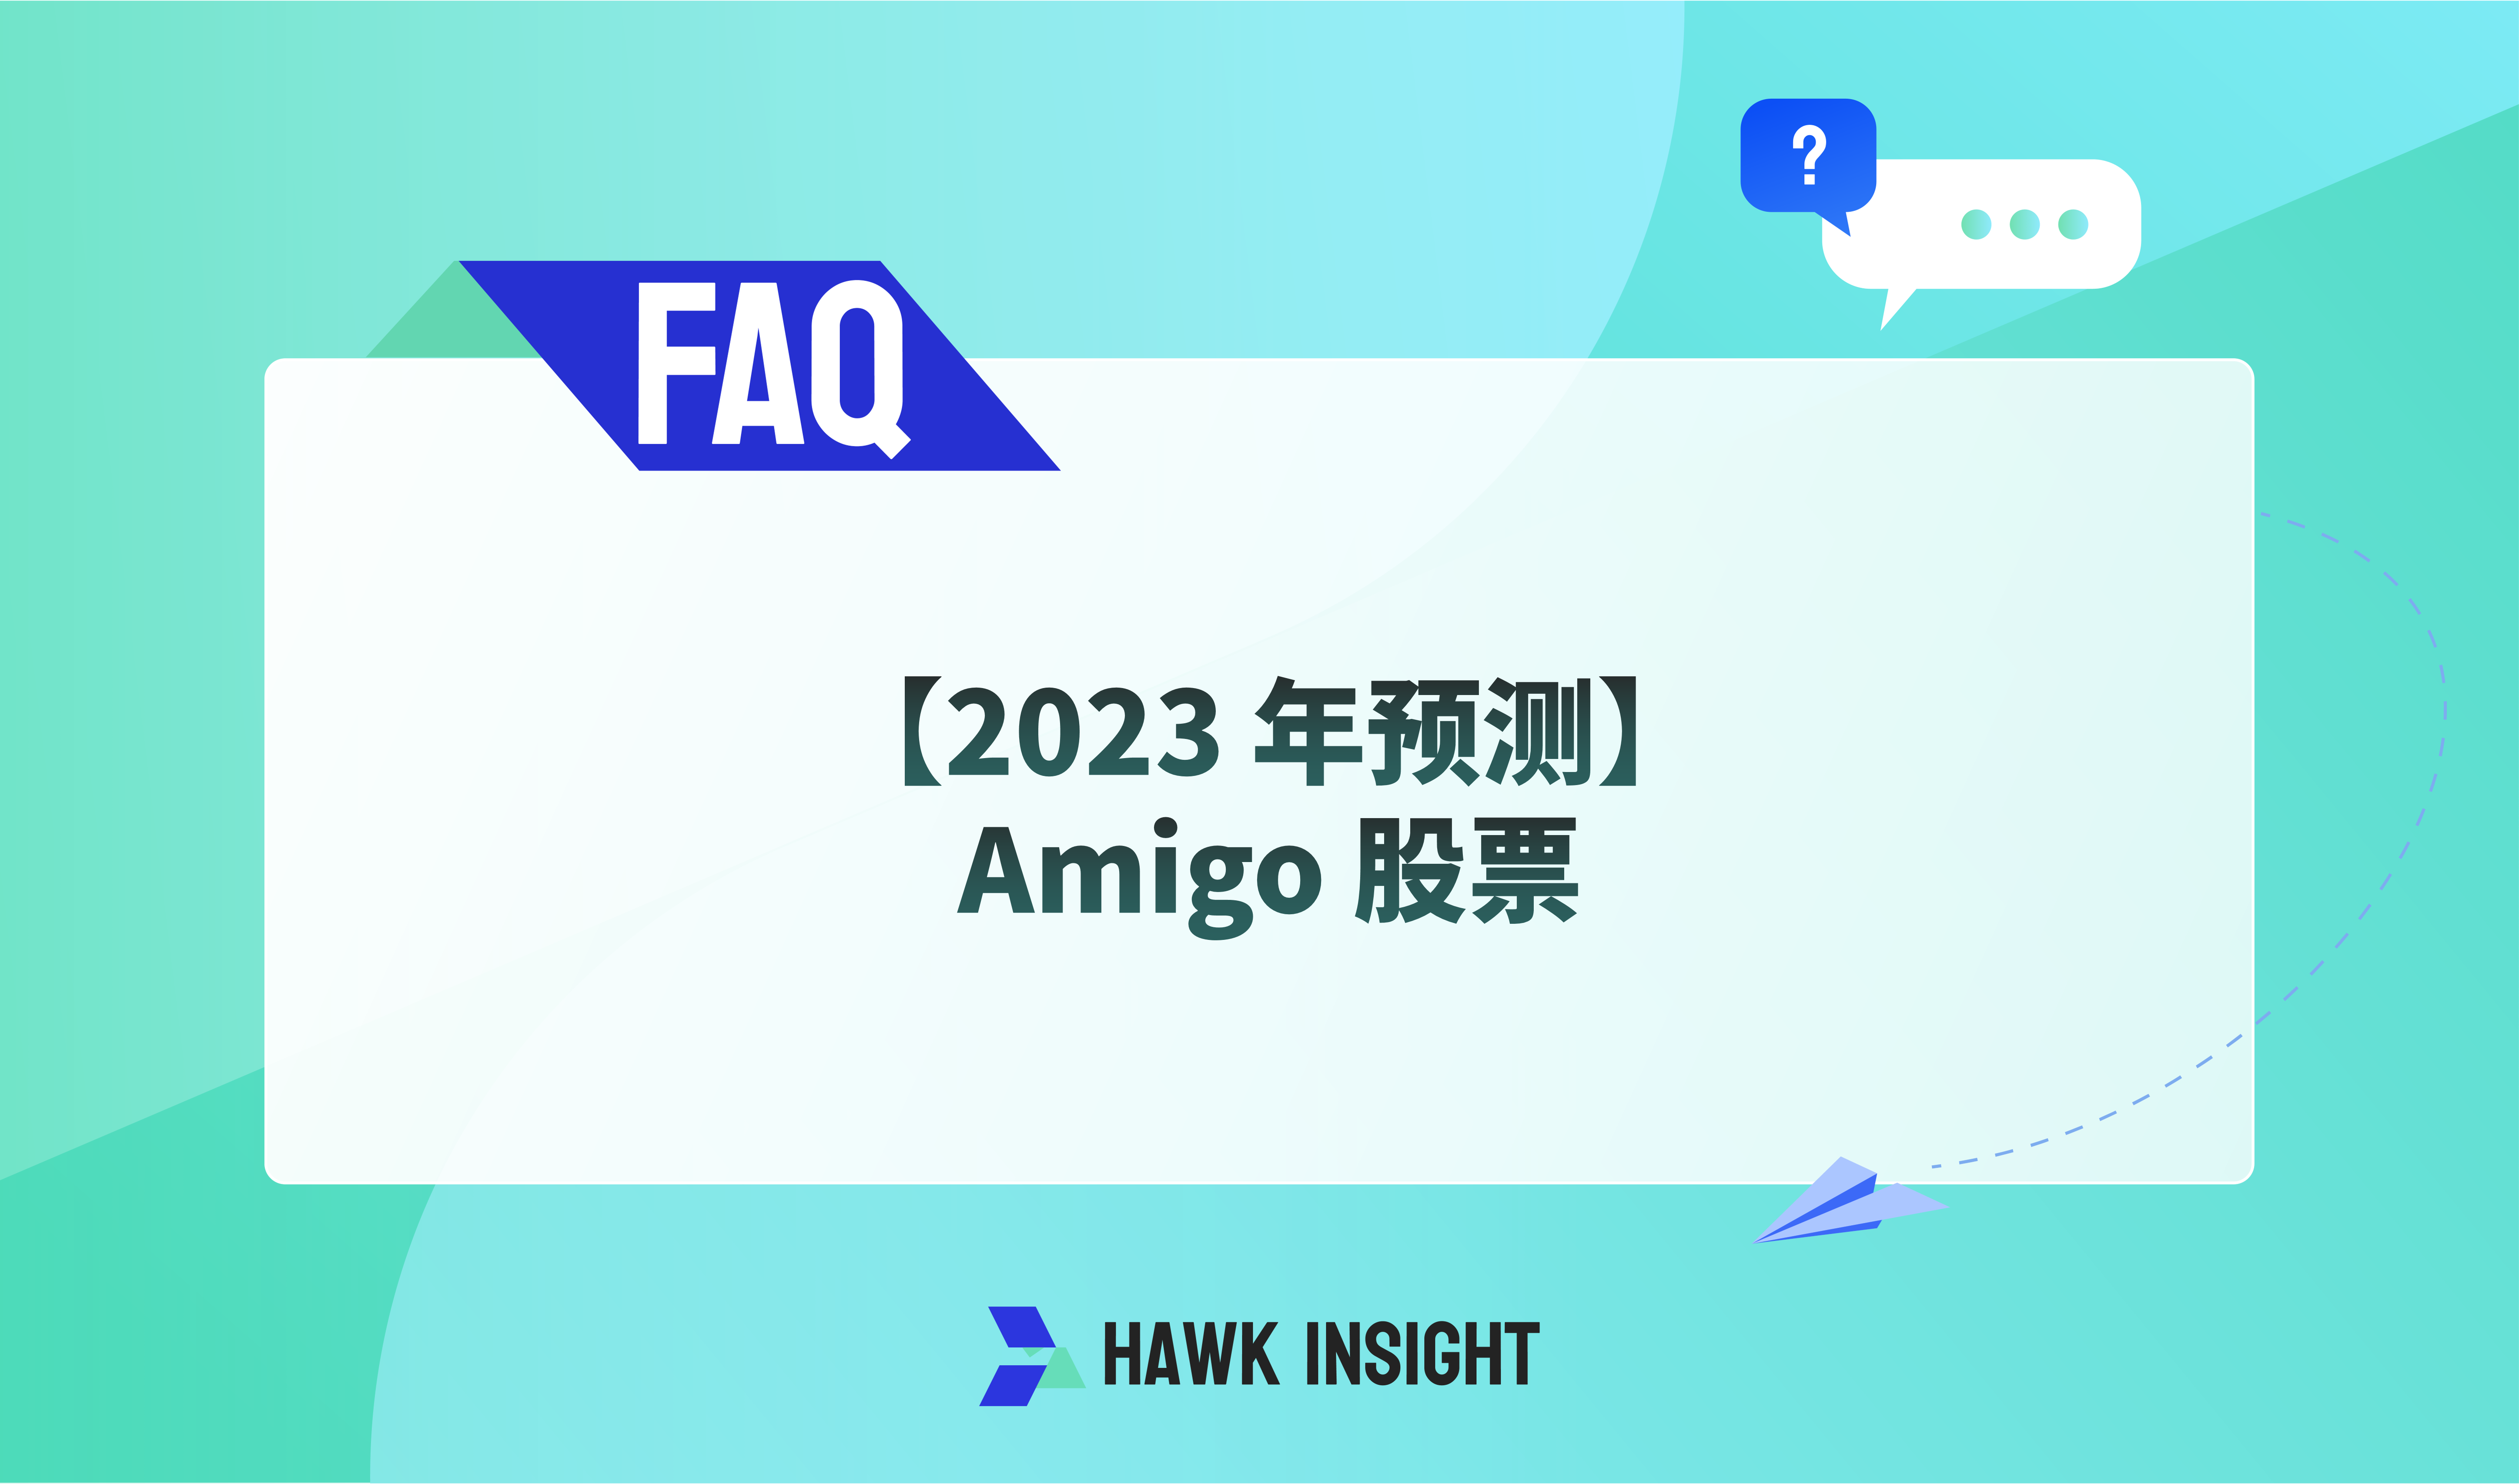 【2023 年预测】Amigo 股票